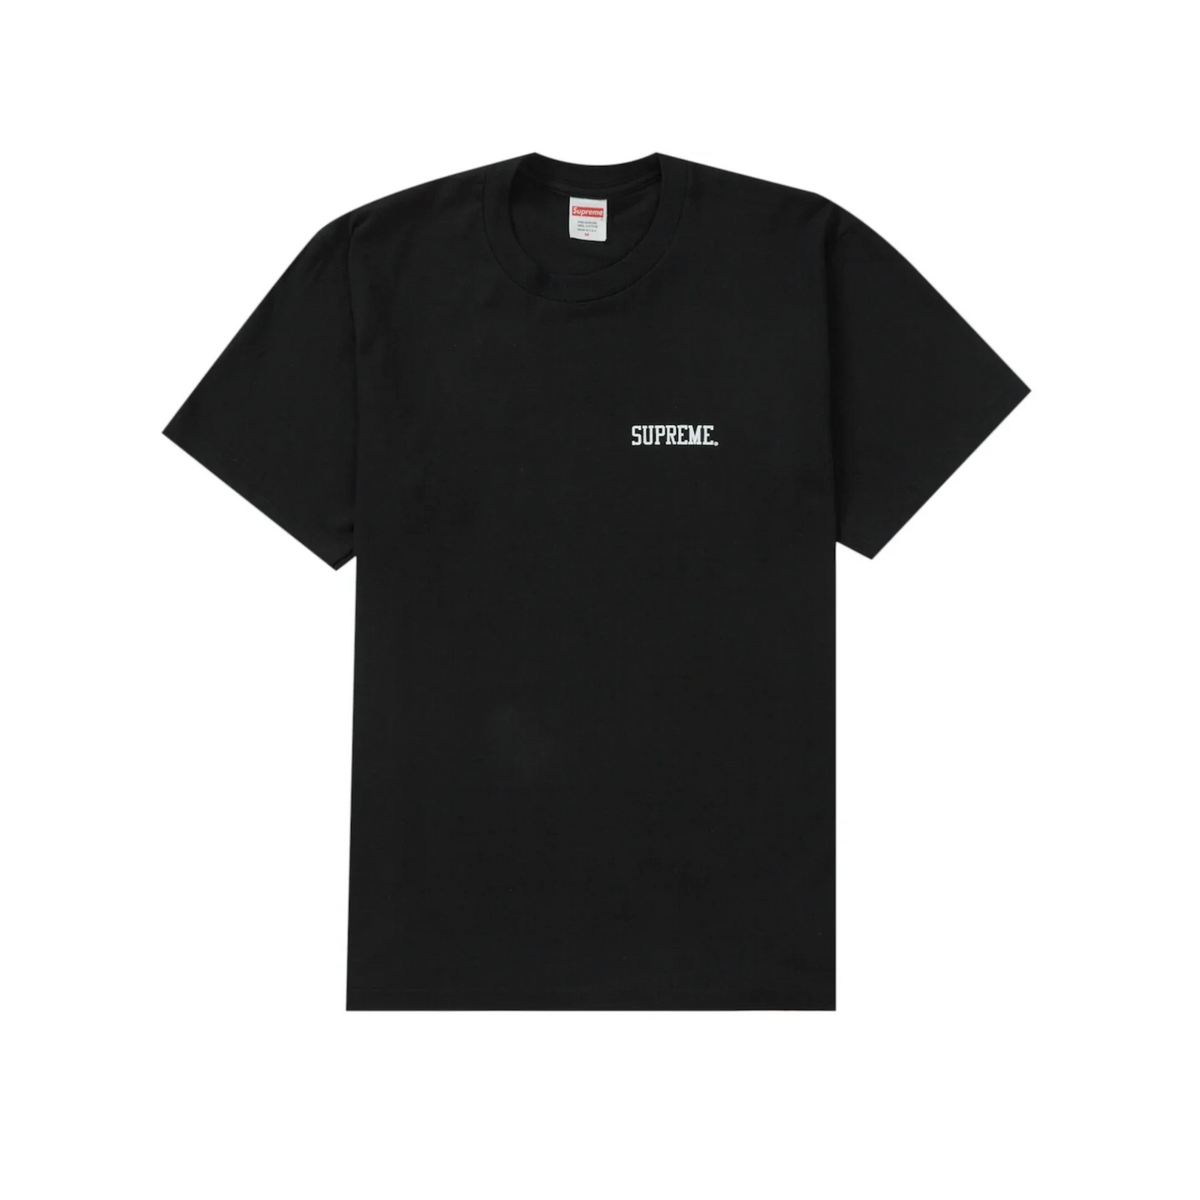 Supreme Fighter T-shirt "Black"